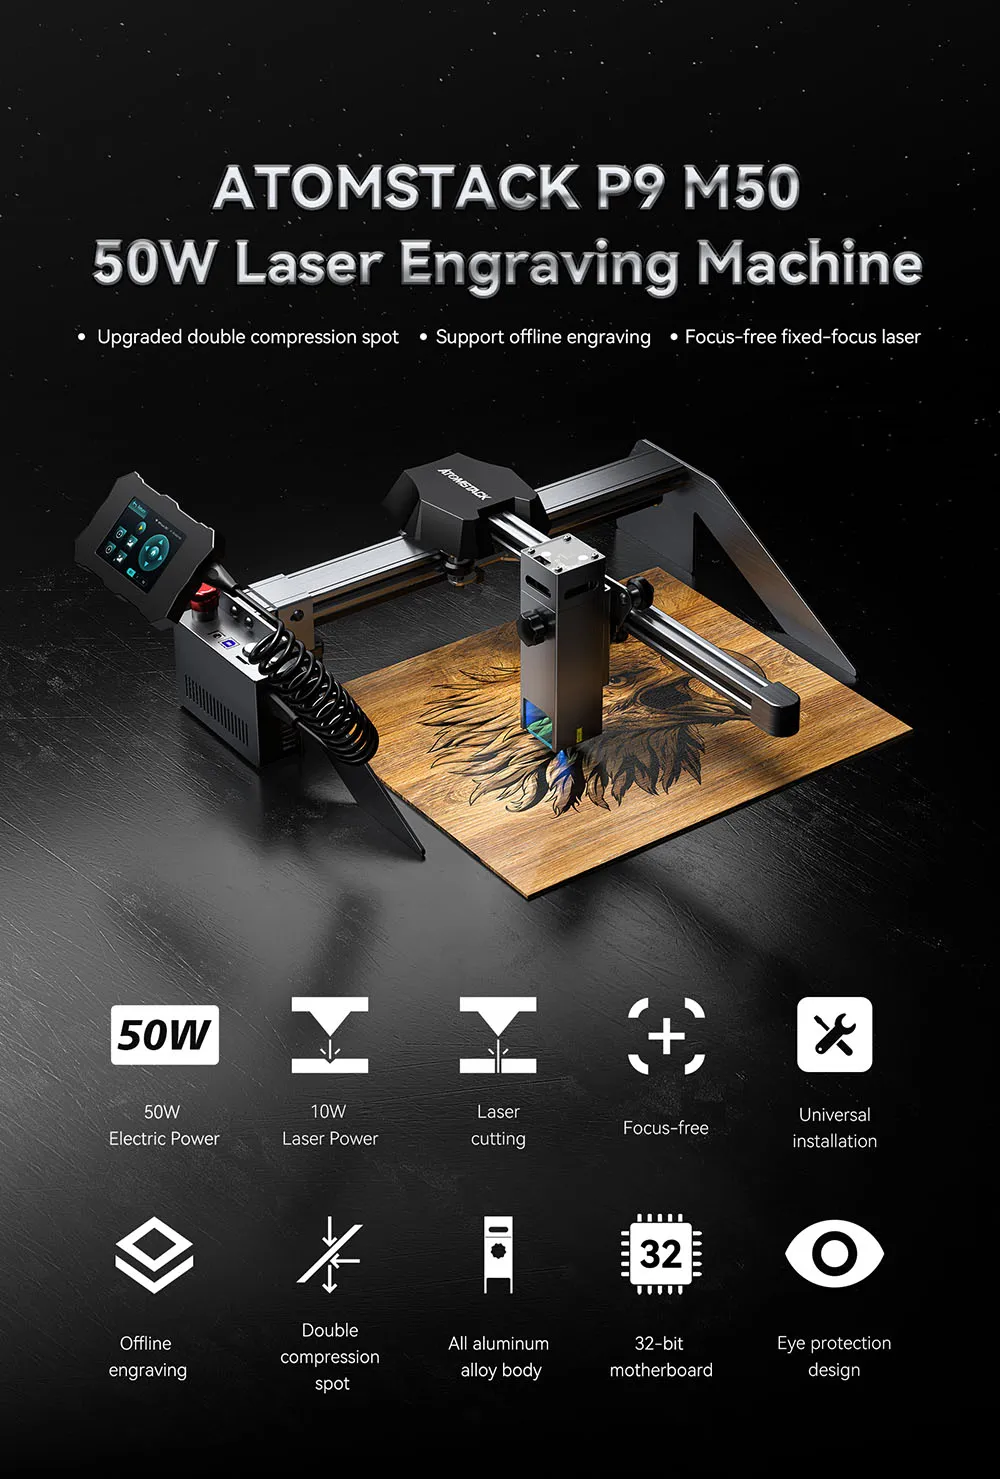 atomstack p9 m50 laser engraving